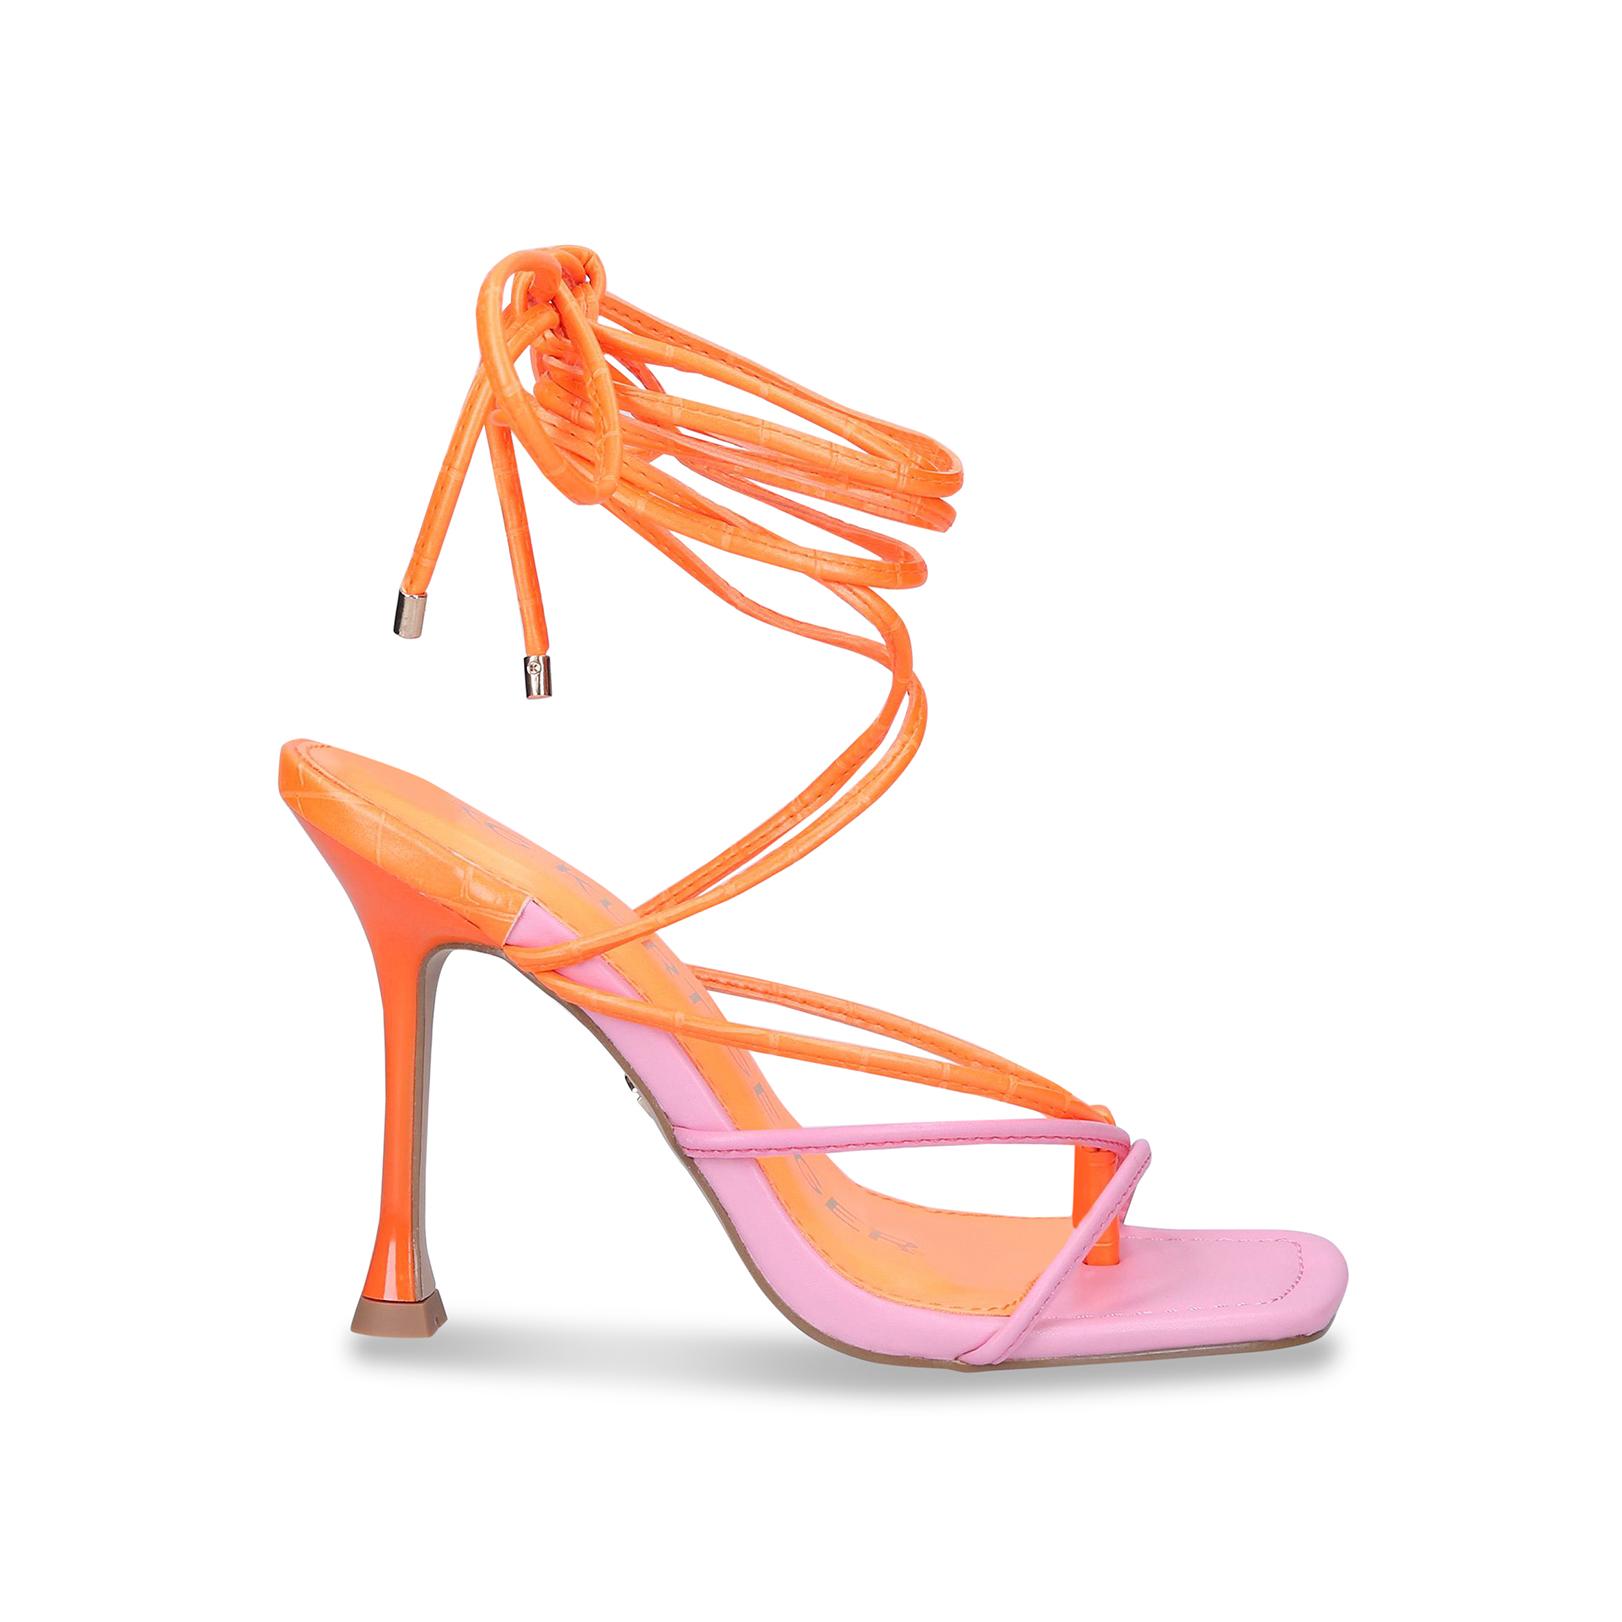 SYDNEY Neon Pink Vegan Strappy High Heels by KG KURT GEIGER